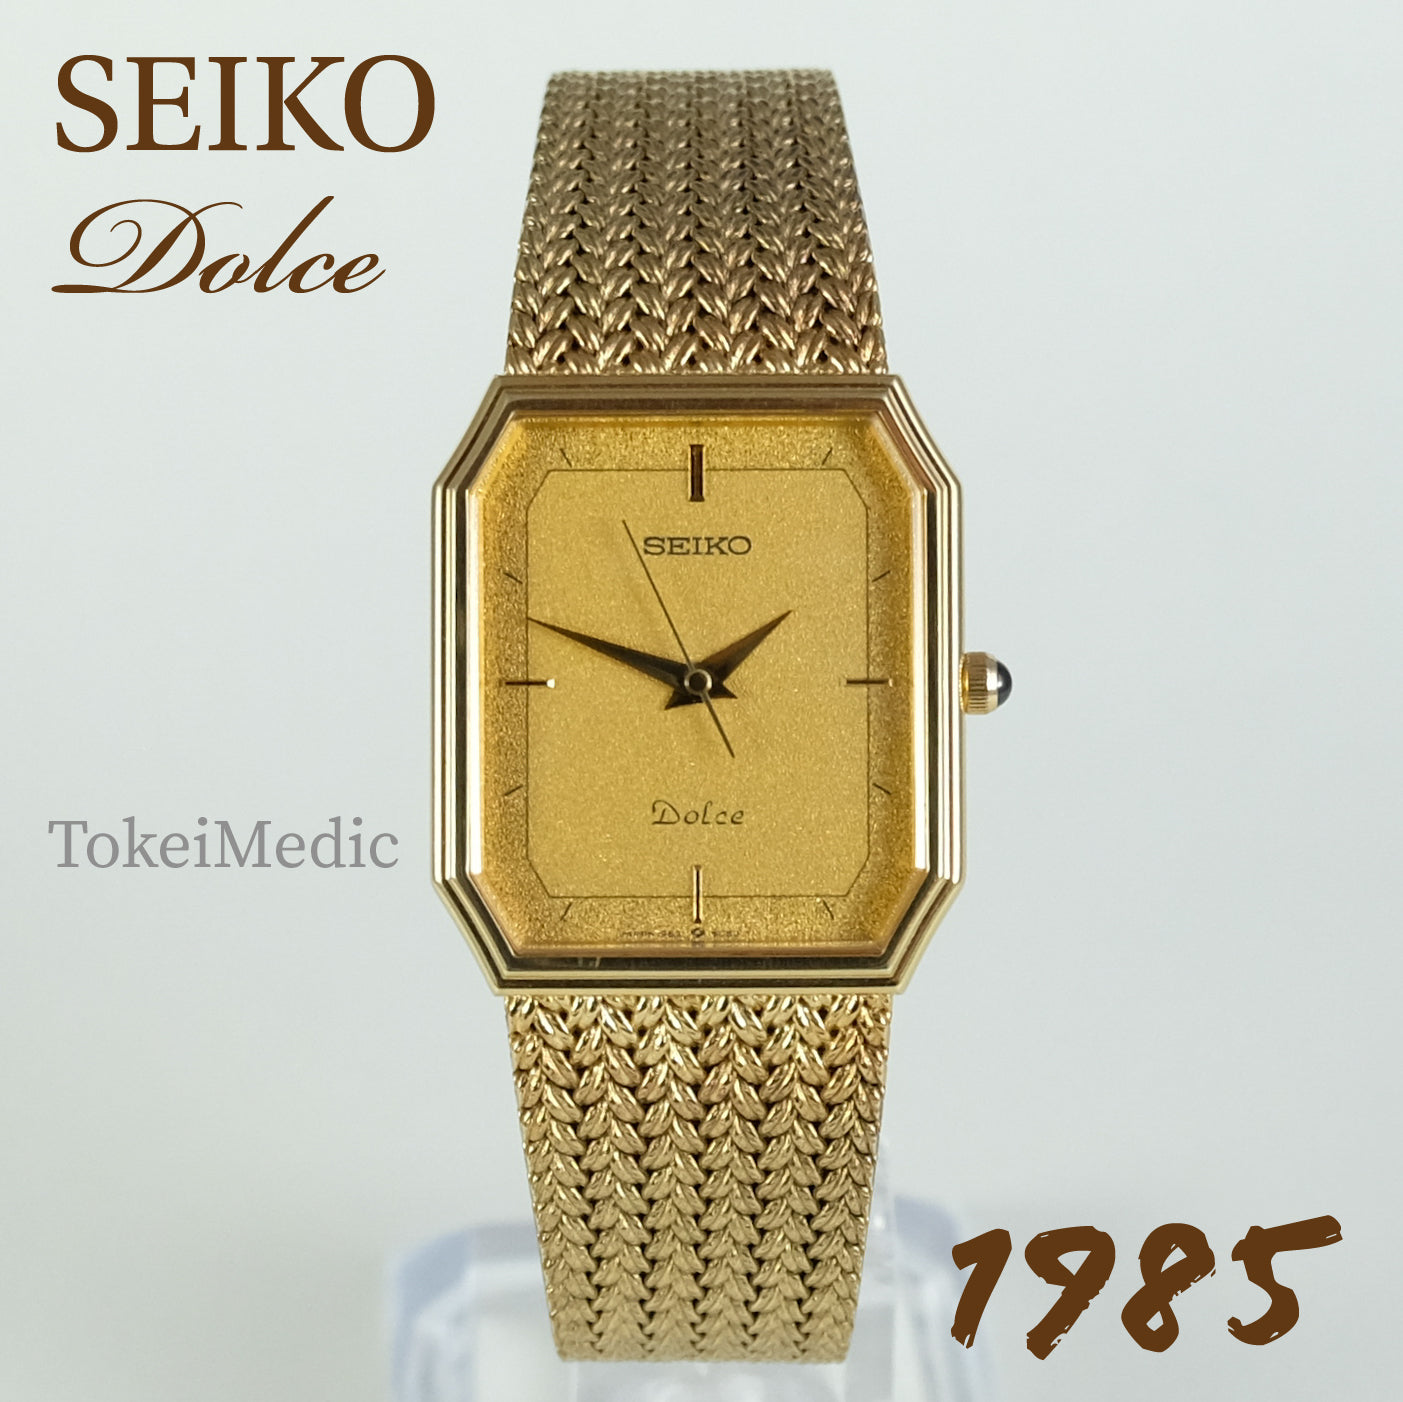 1985 Seiko Dolce 9531-5080